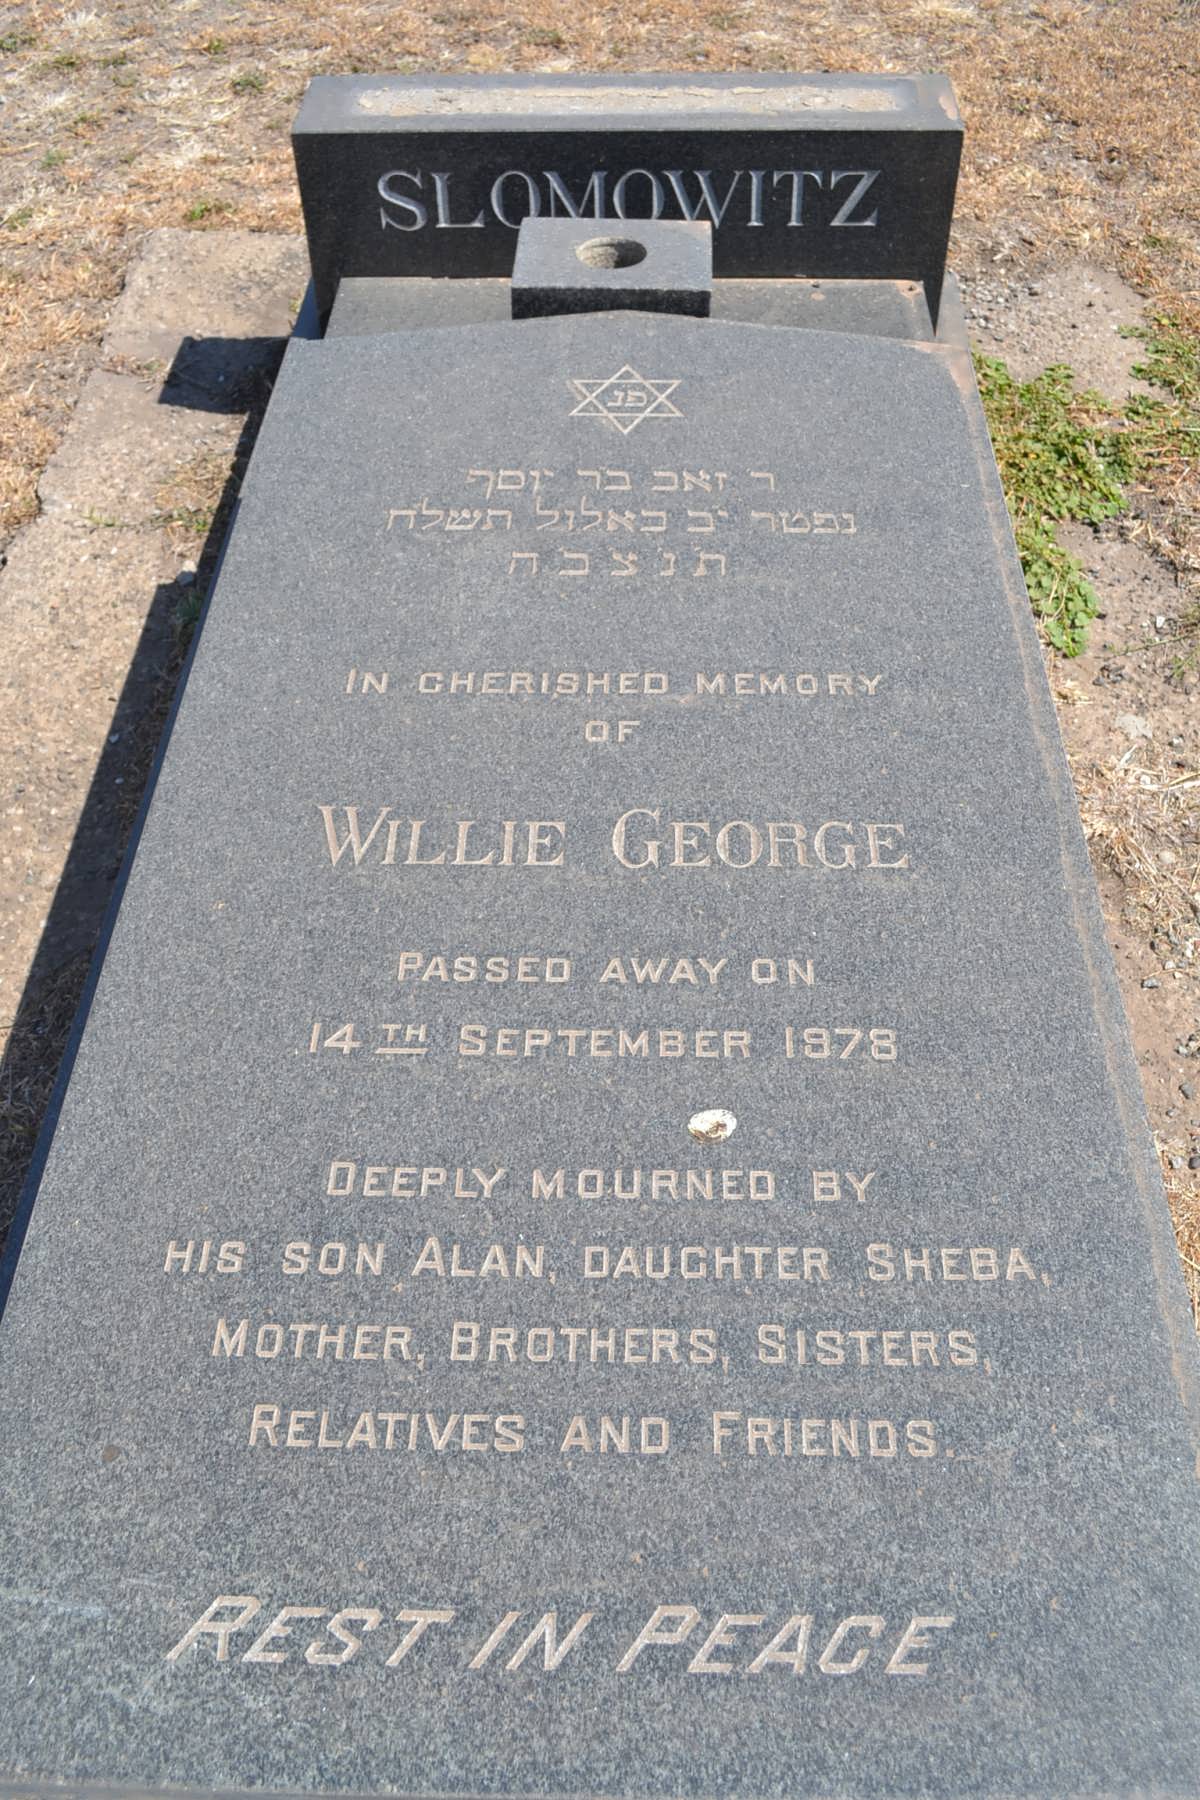 SLOMOWITZ Willie George -1978